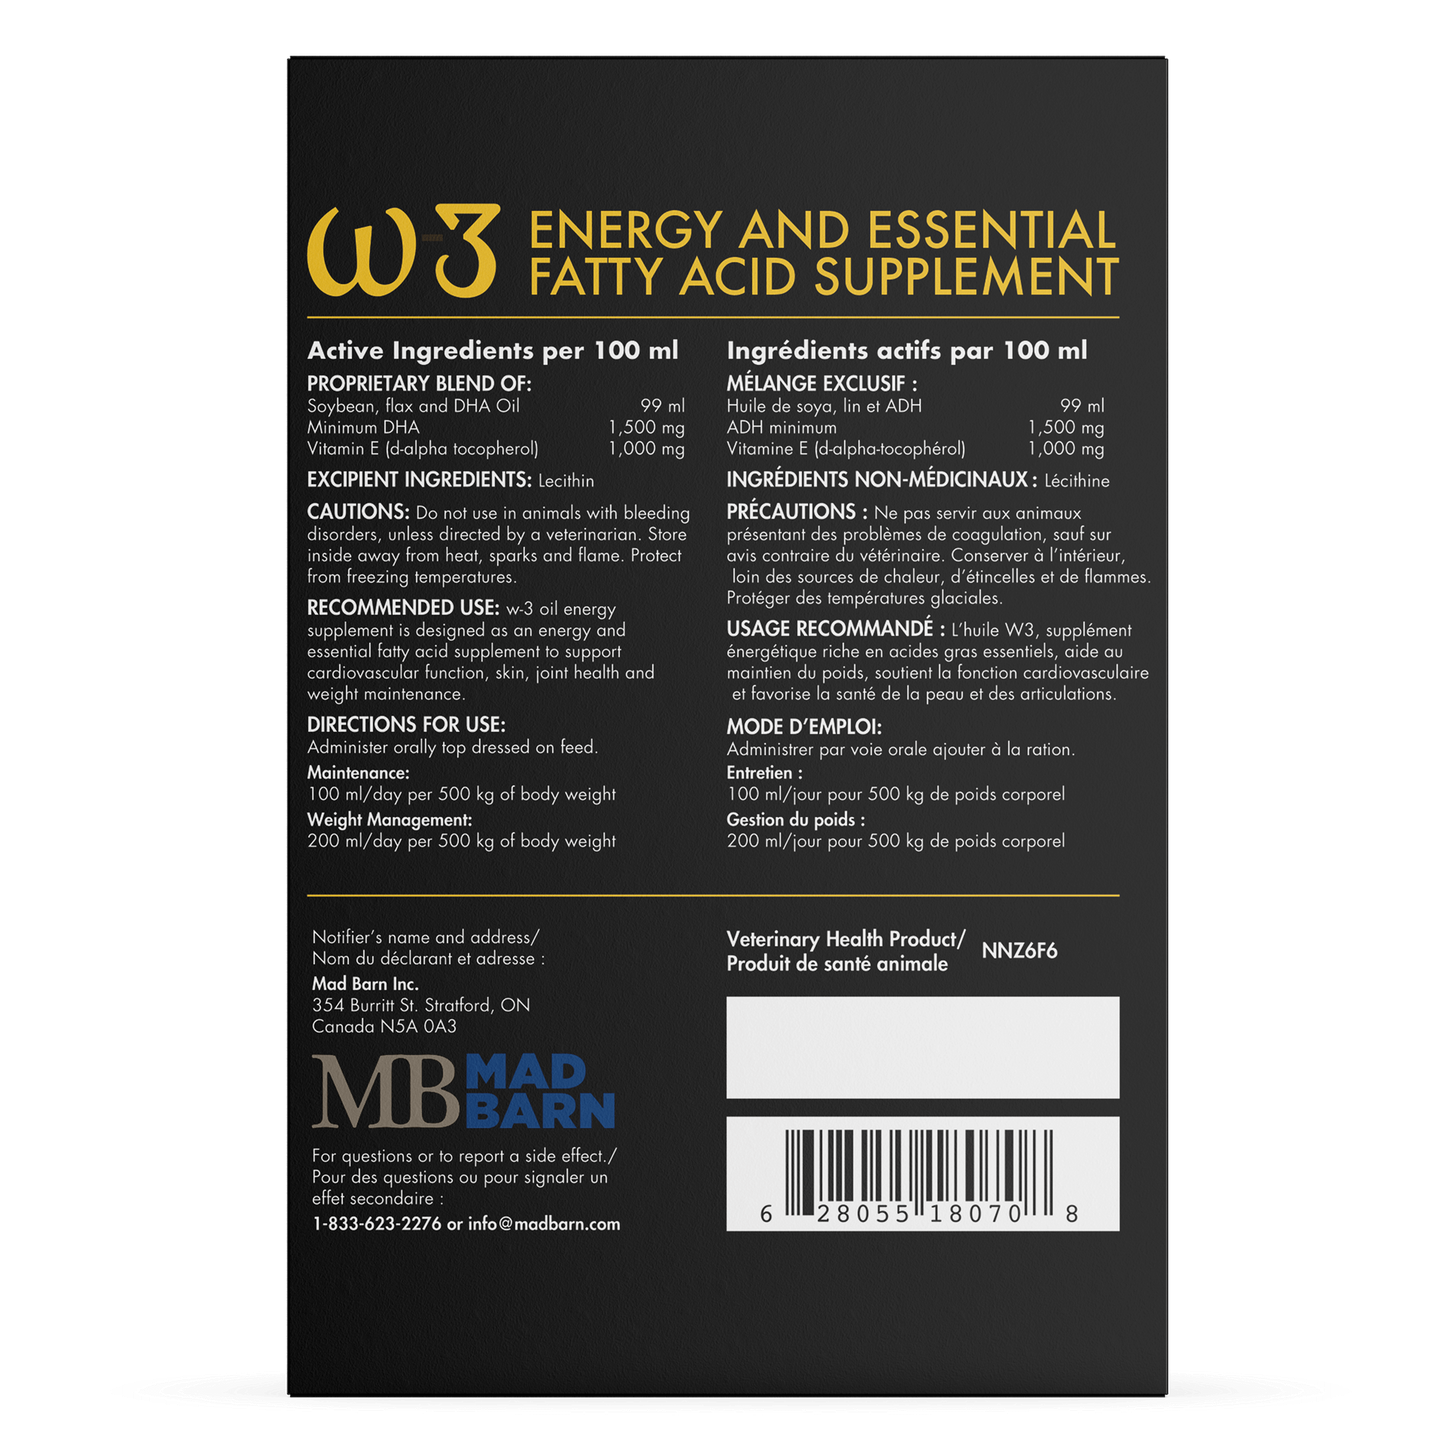 Mad barn W3 energy amd essential fatty acid supplement